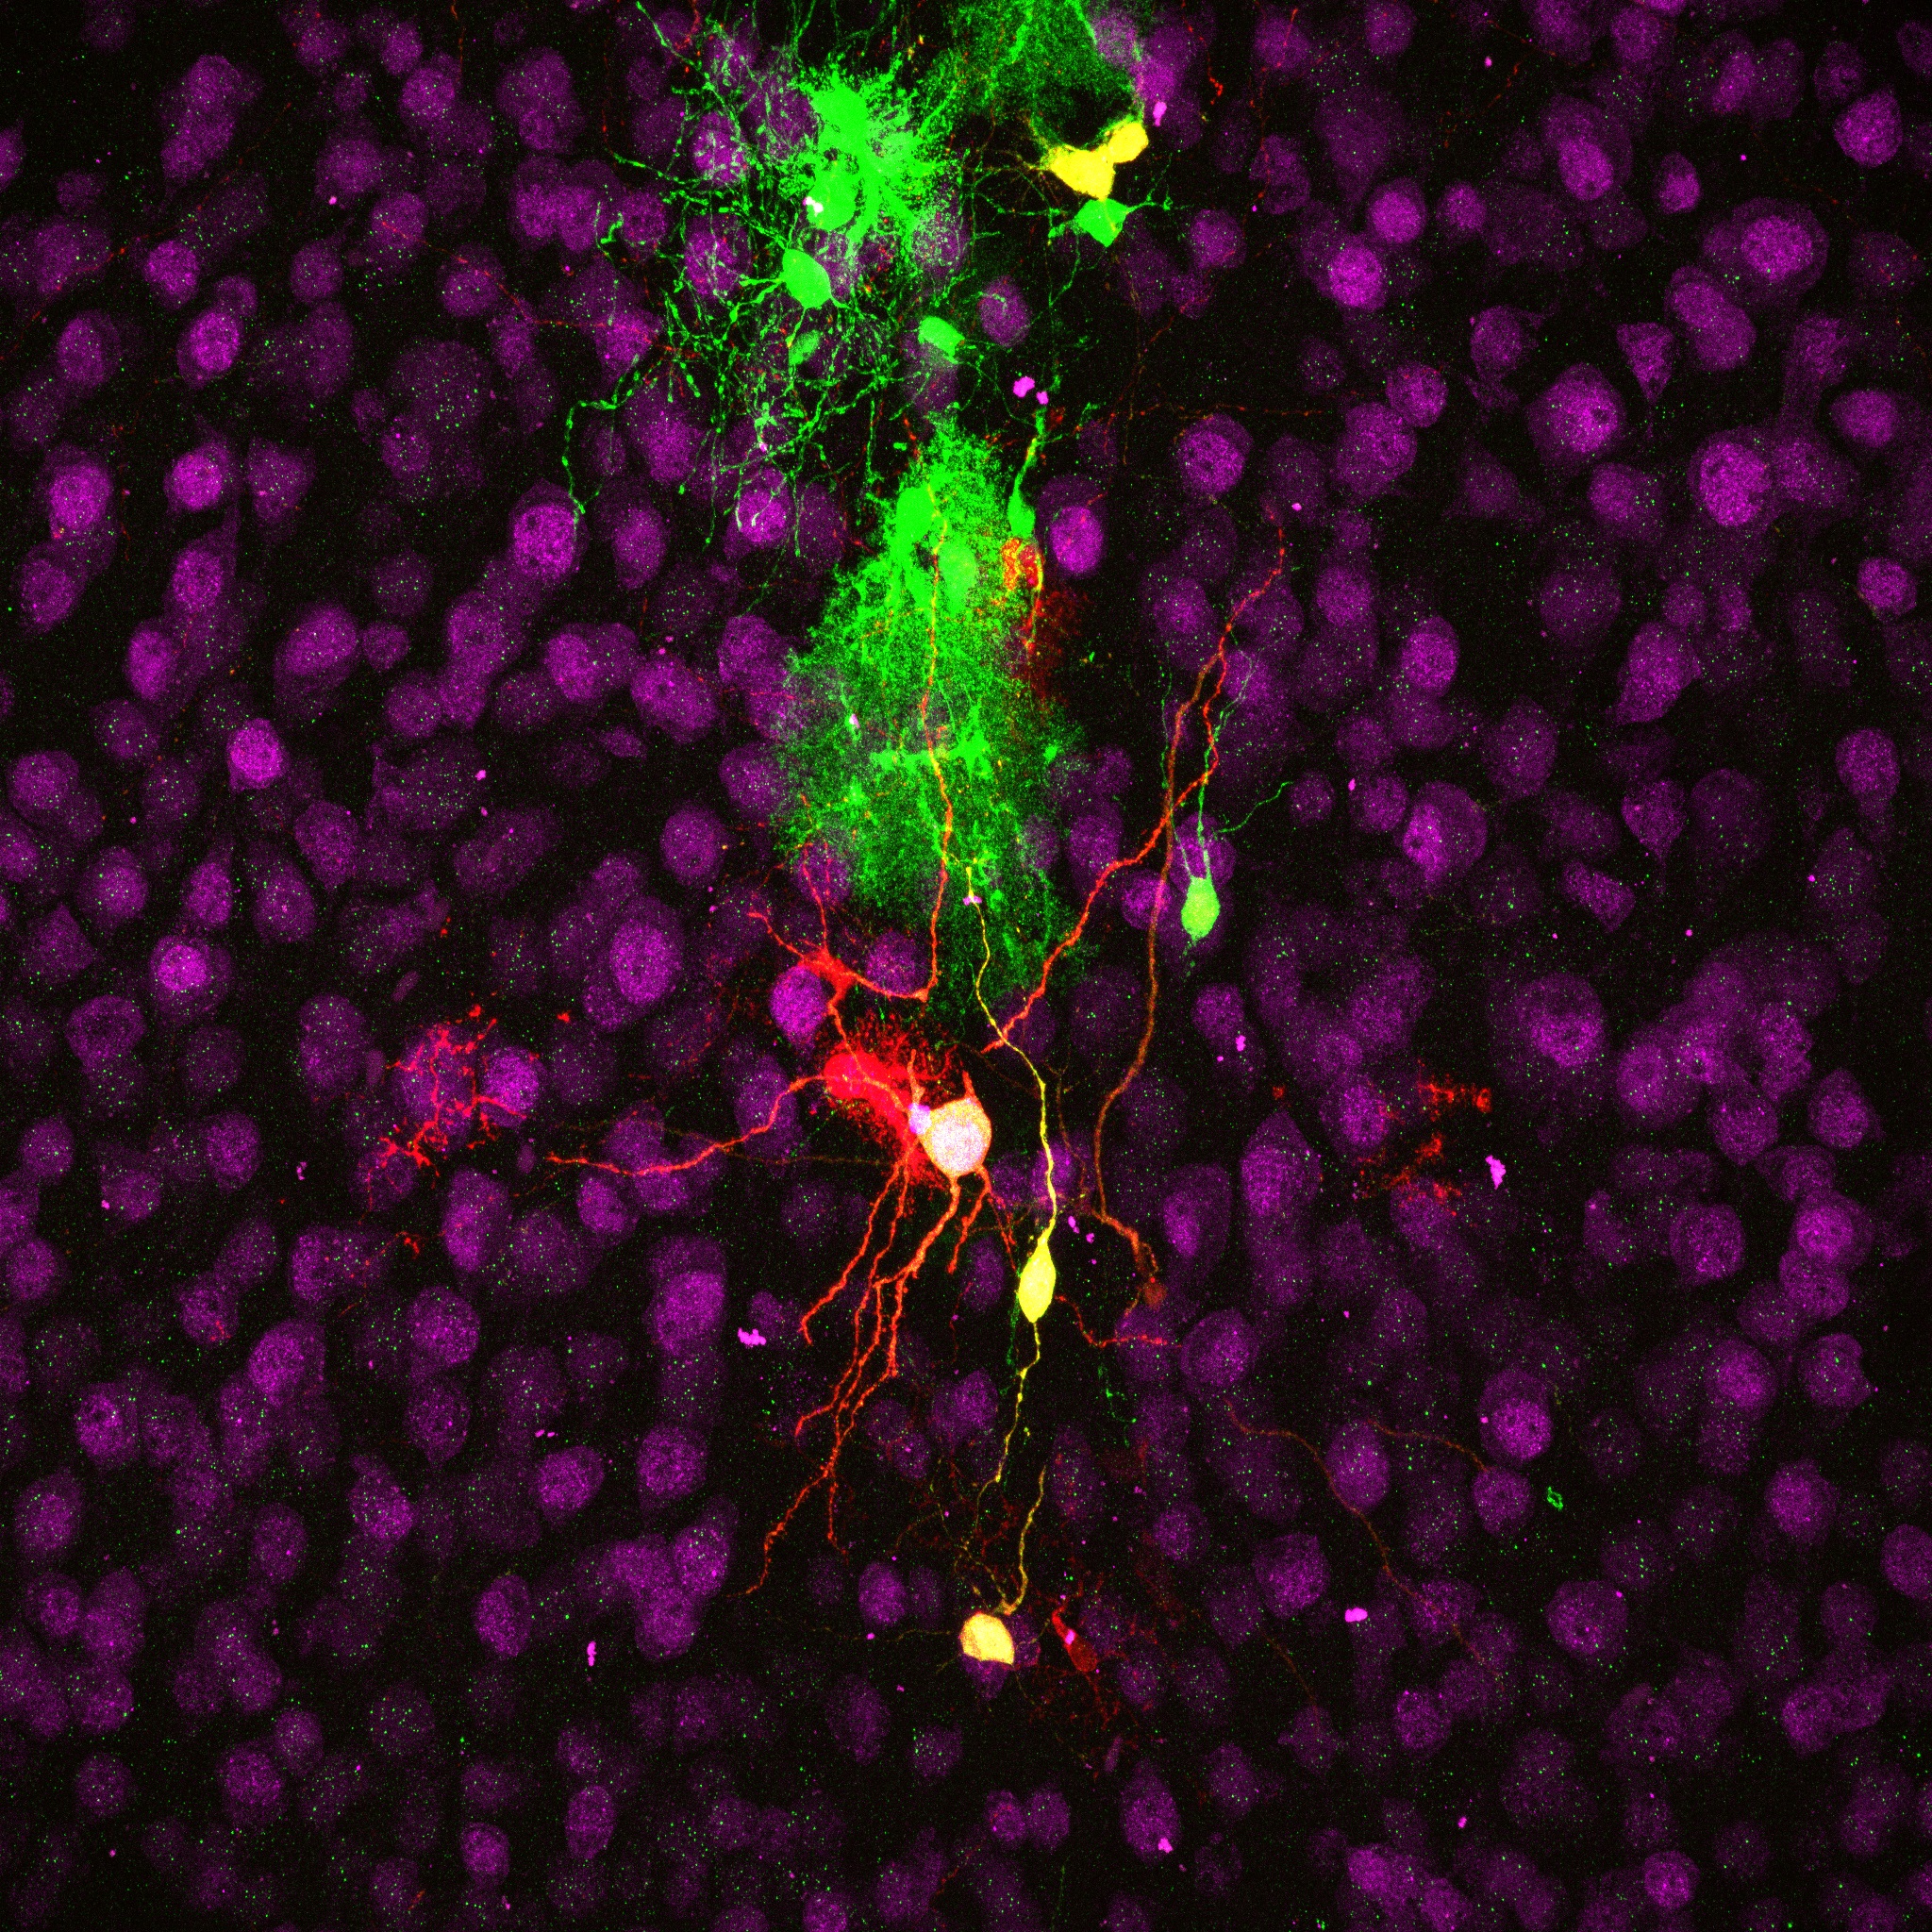 Neuronas inducidas (en amarillo) y células gliales (en rojo y verde) en la corteza cerebral de un ratón